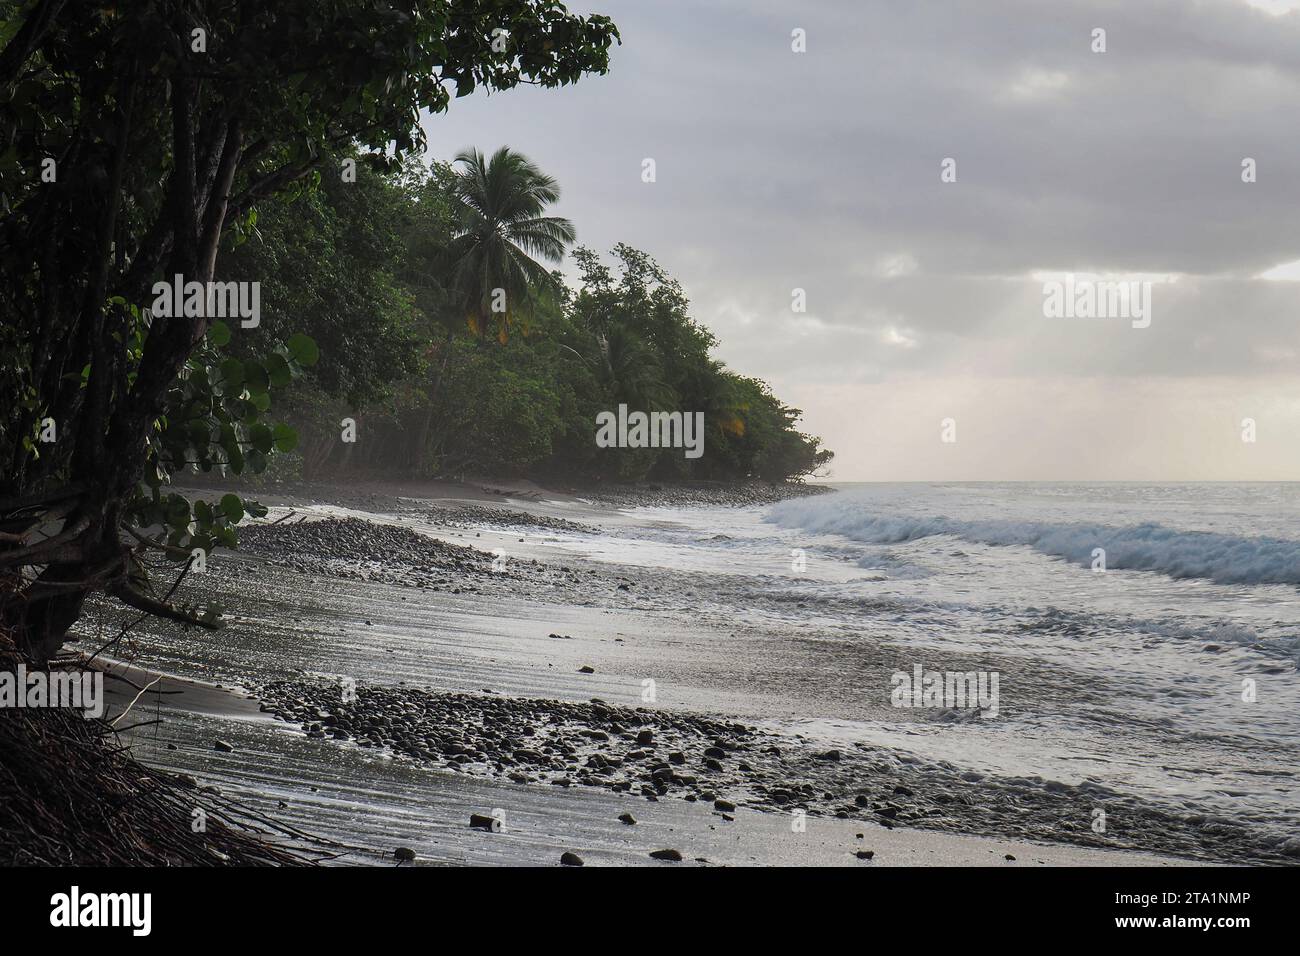 Anse couleuvre, Nord de la Martinique, plages les plus sauvages de l'île. Sable noir volcanique et nature exubérante Martinique, Antilles Stock Photo